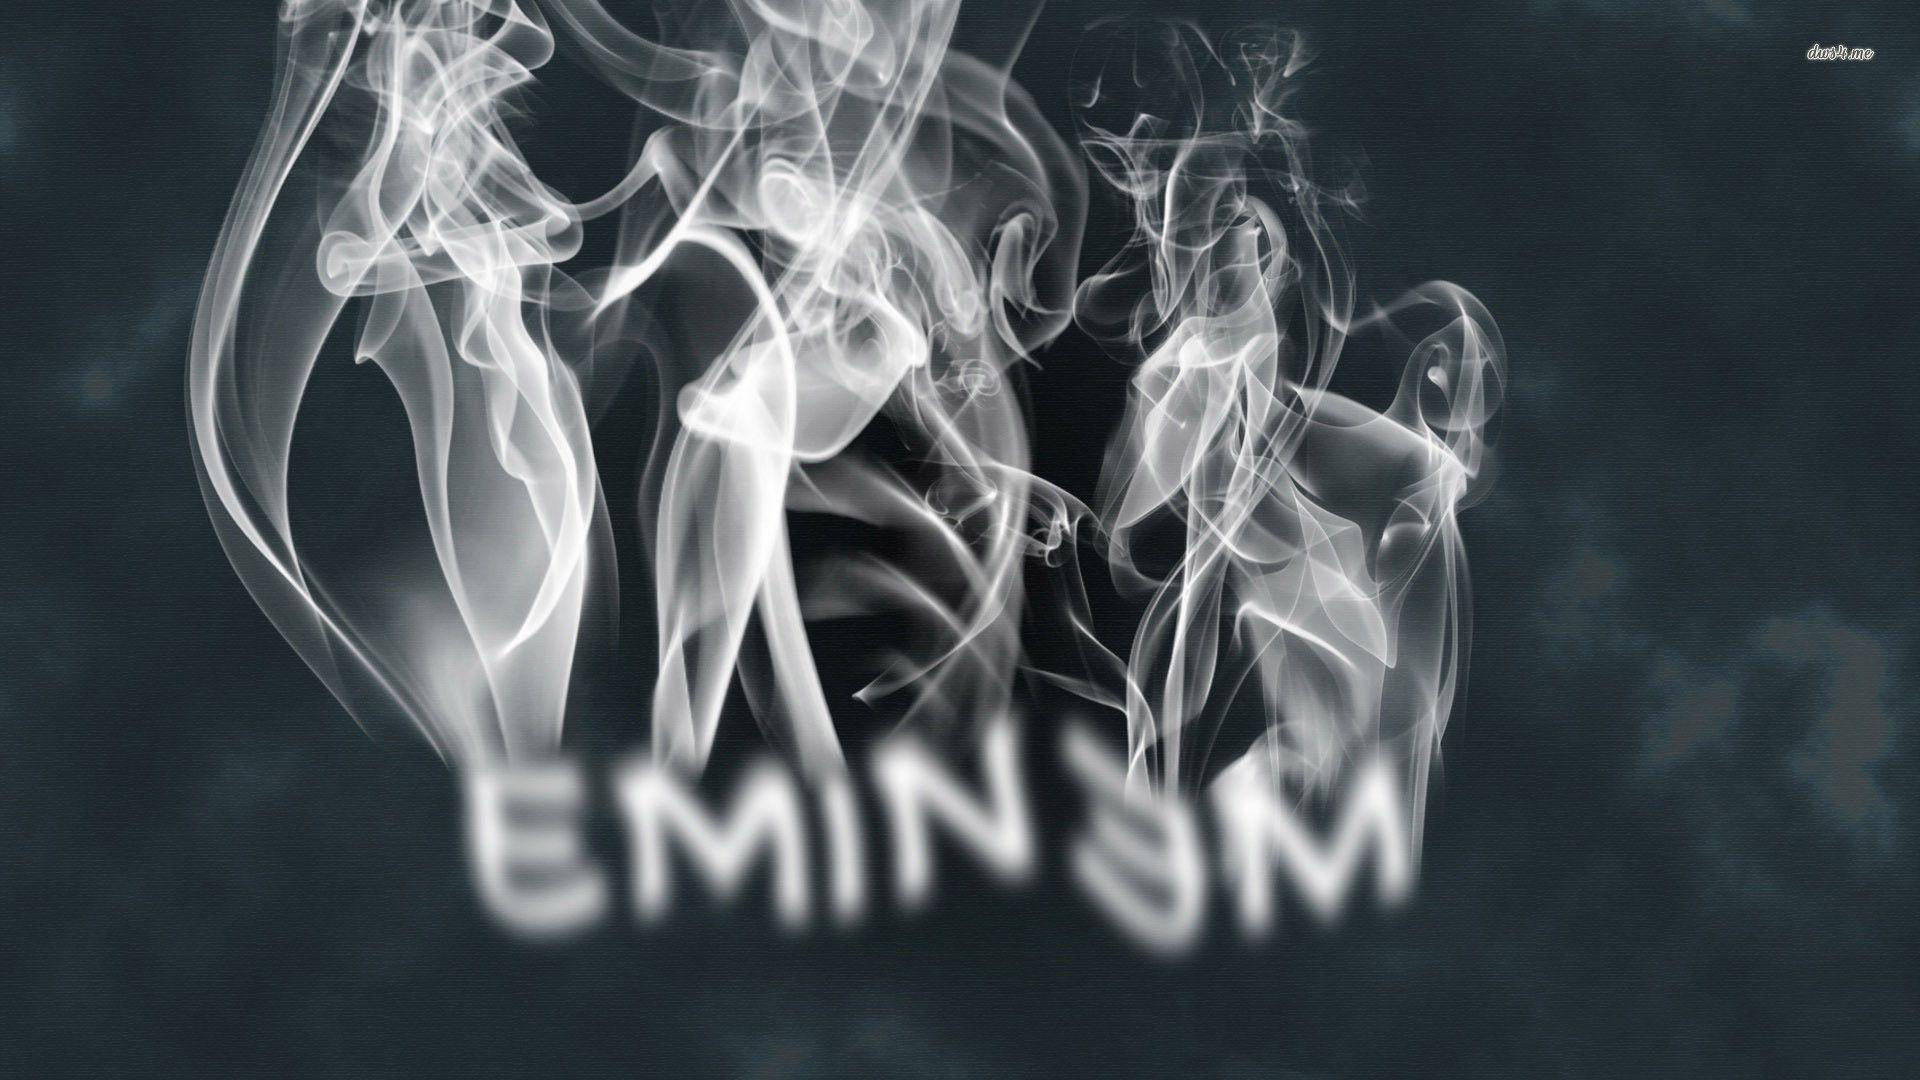 20584 Eminem 1920x1080 Music Wallpaper Eminem Wallpaper HD Free